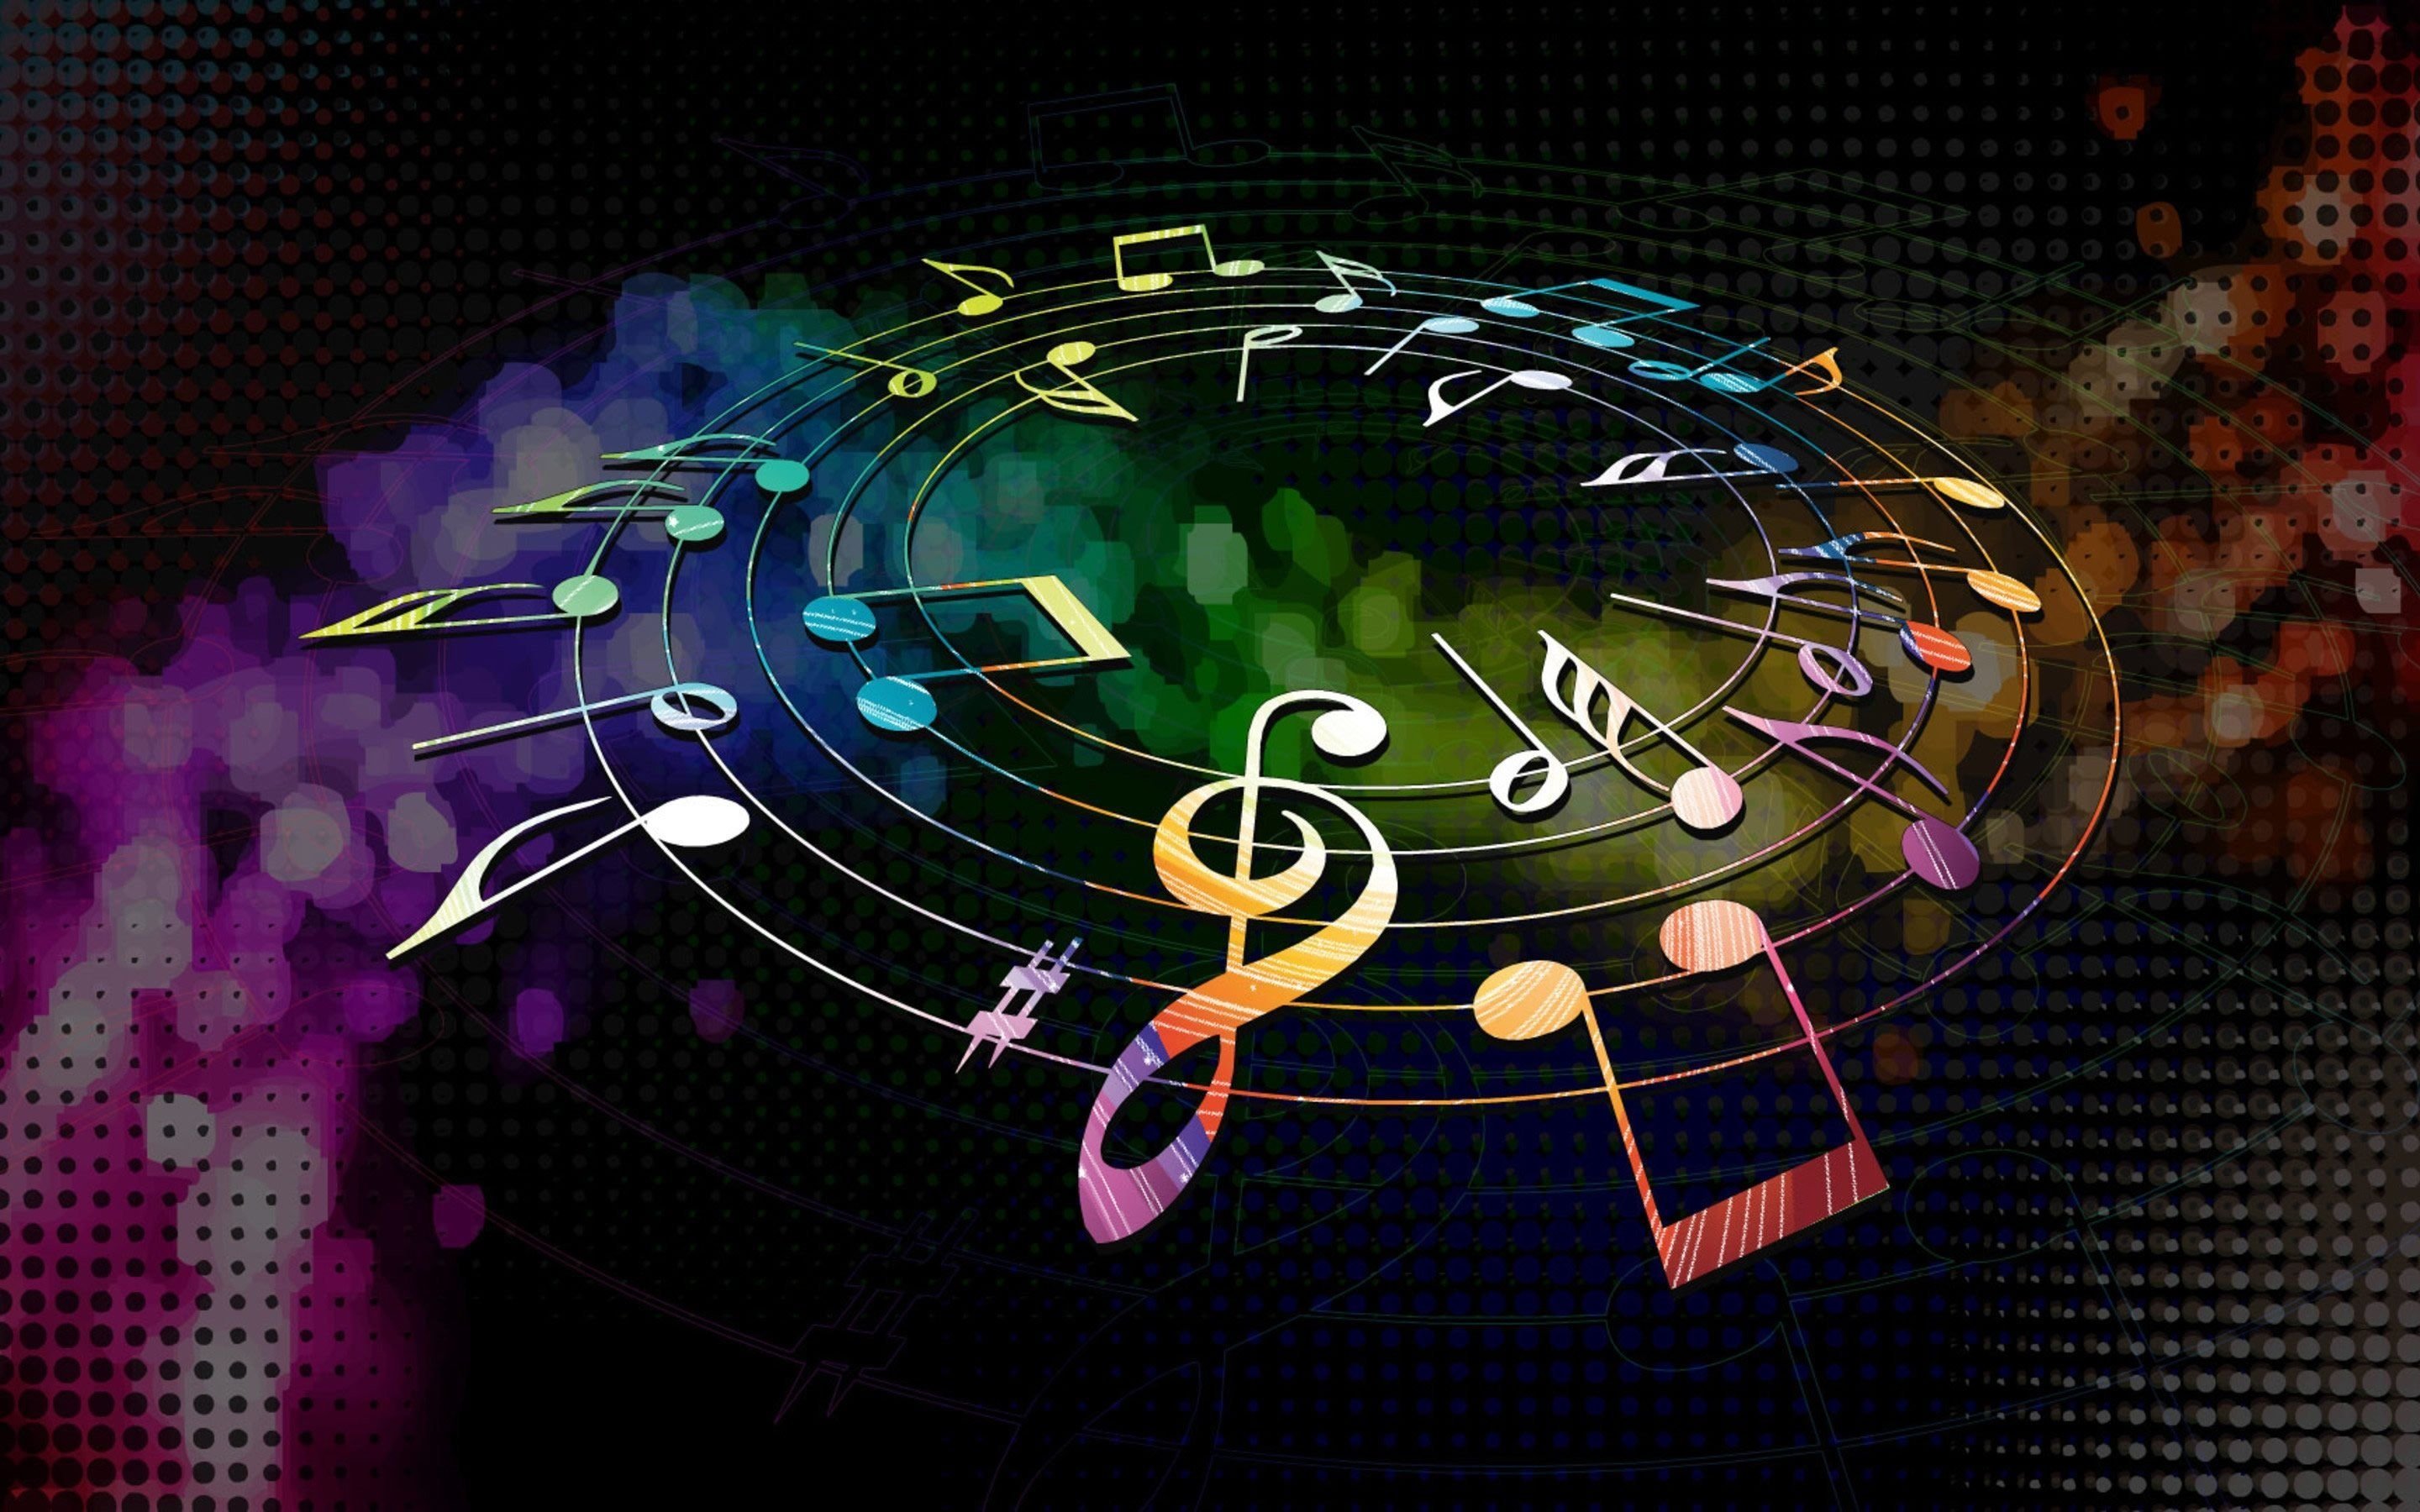 Musica stasera. Музыкальный фон. Музыкальная абстракция. Музыкальные обои. Картинки с музыкальной тематикой.